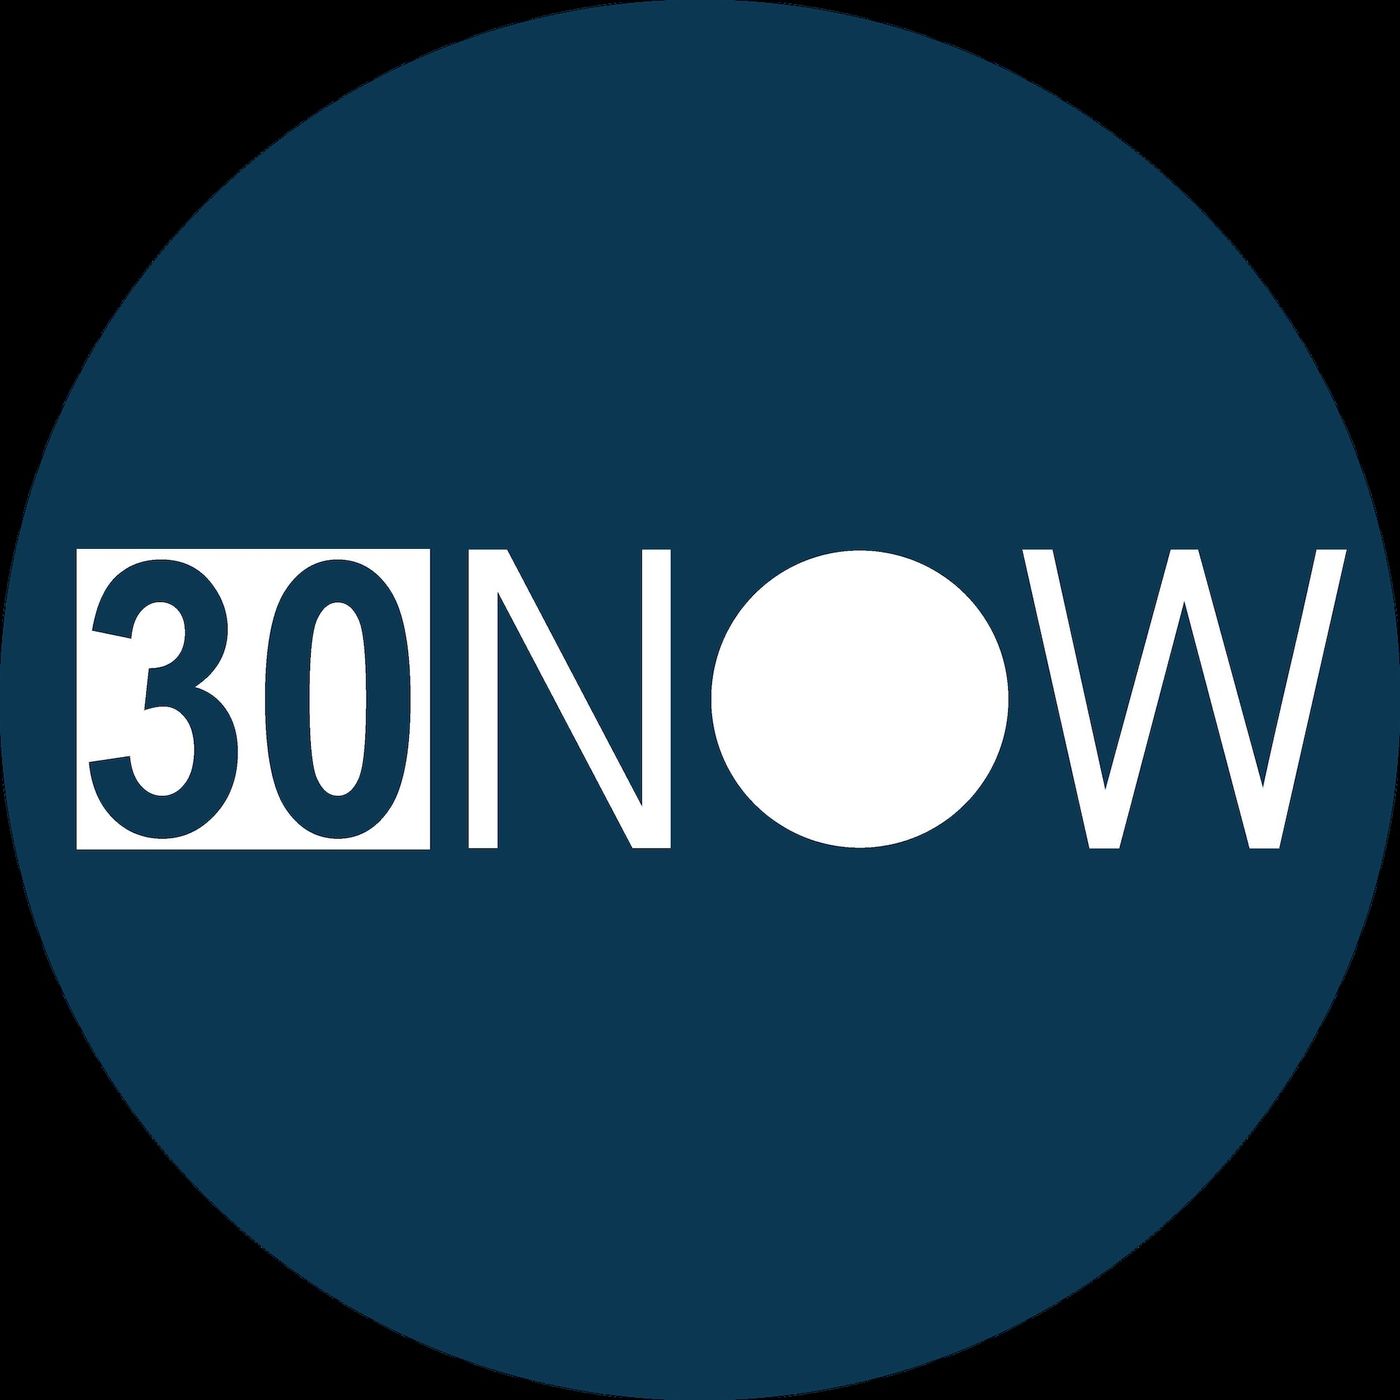 Logo 30NOW - Meditatie voor iedereen